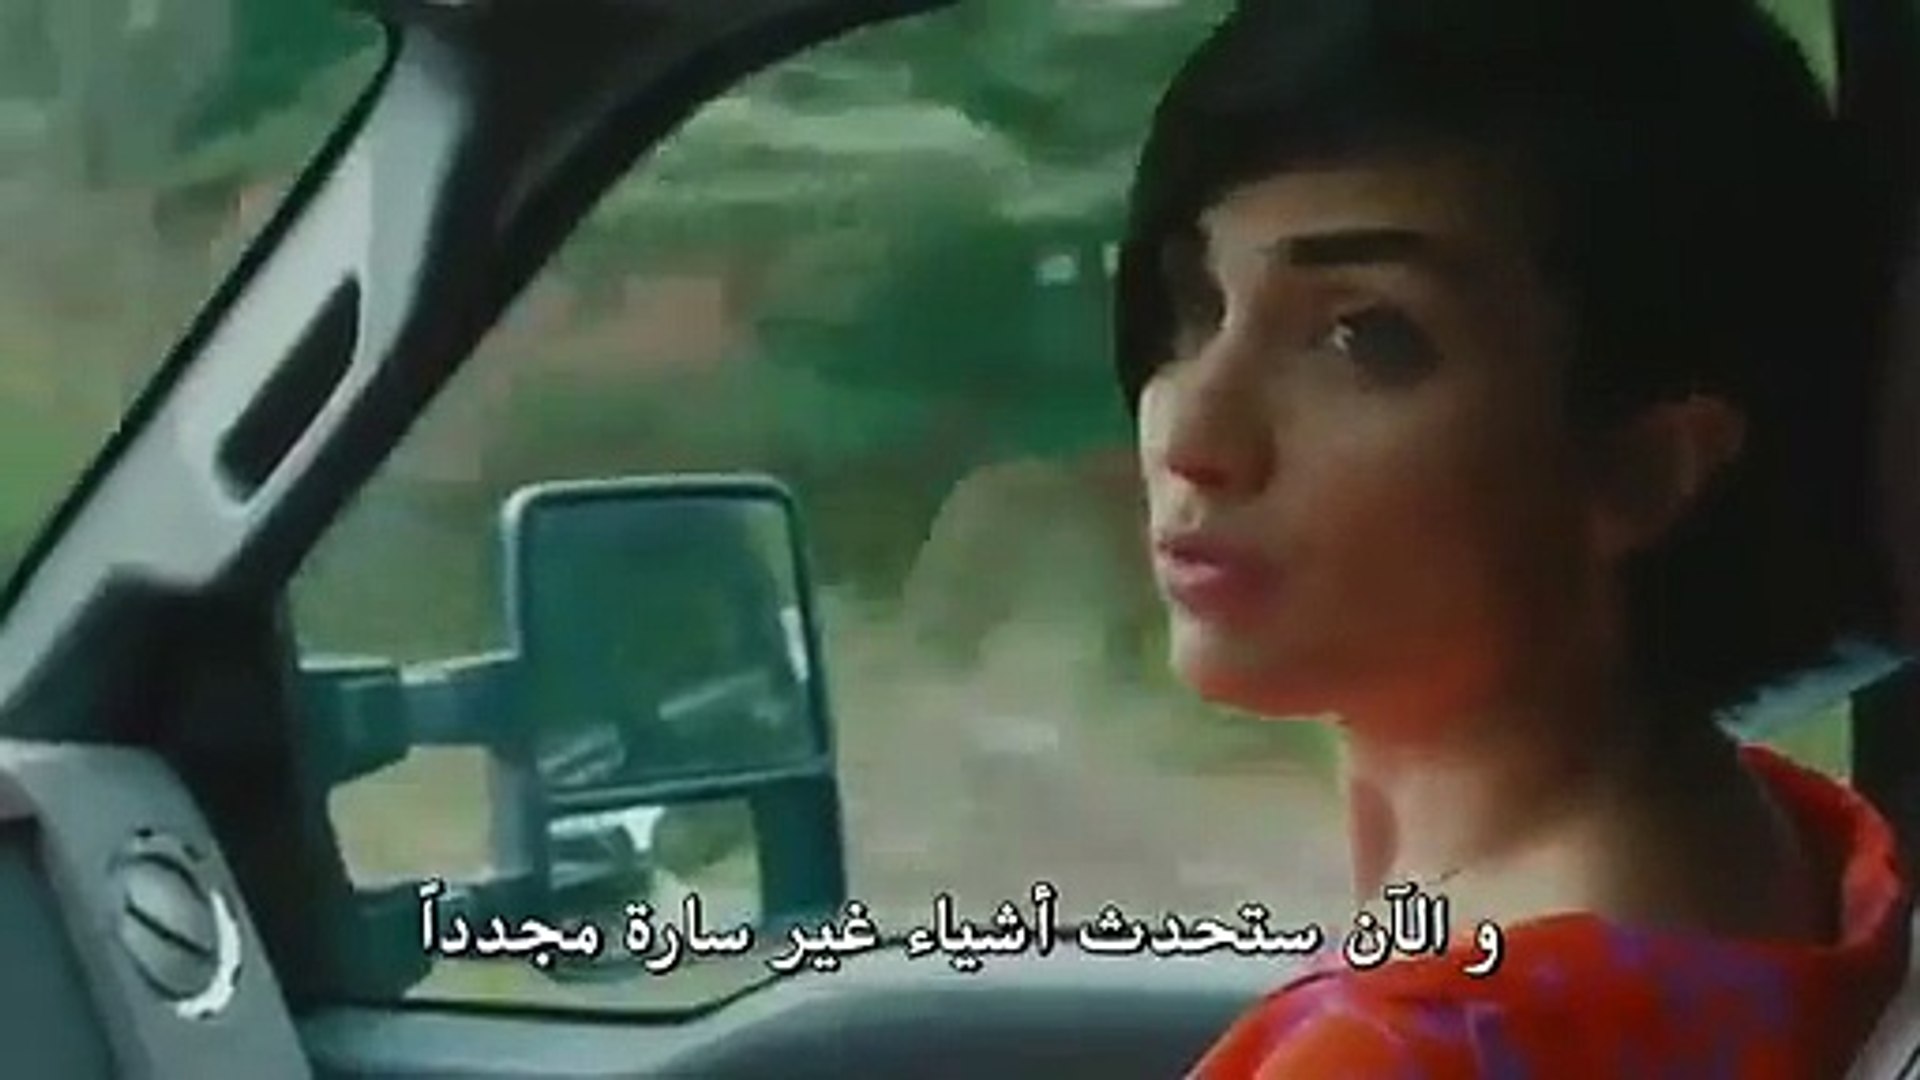 مسلسل جسور والجميلة الحلقه 31 إعلان 1 مترجم بالعربي فيديو Dailymotion